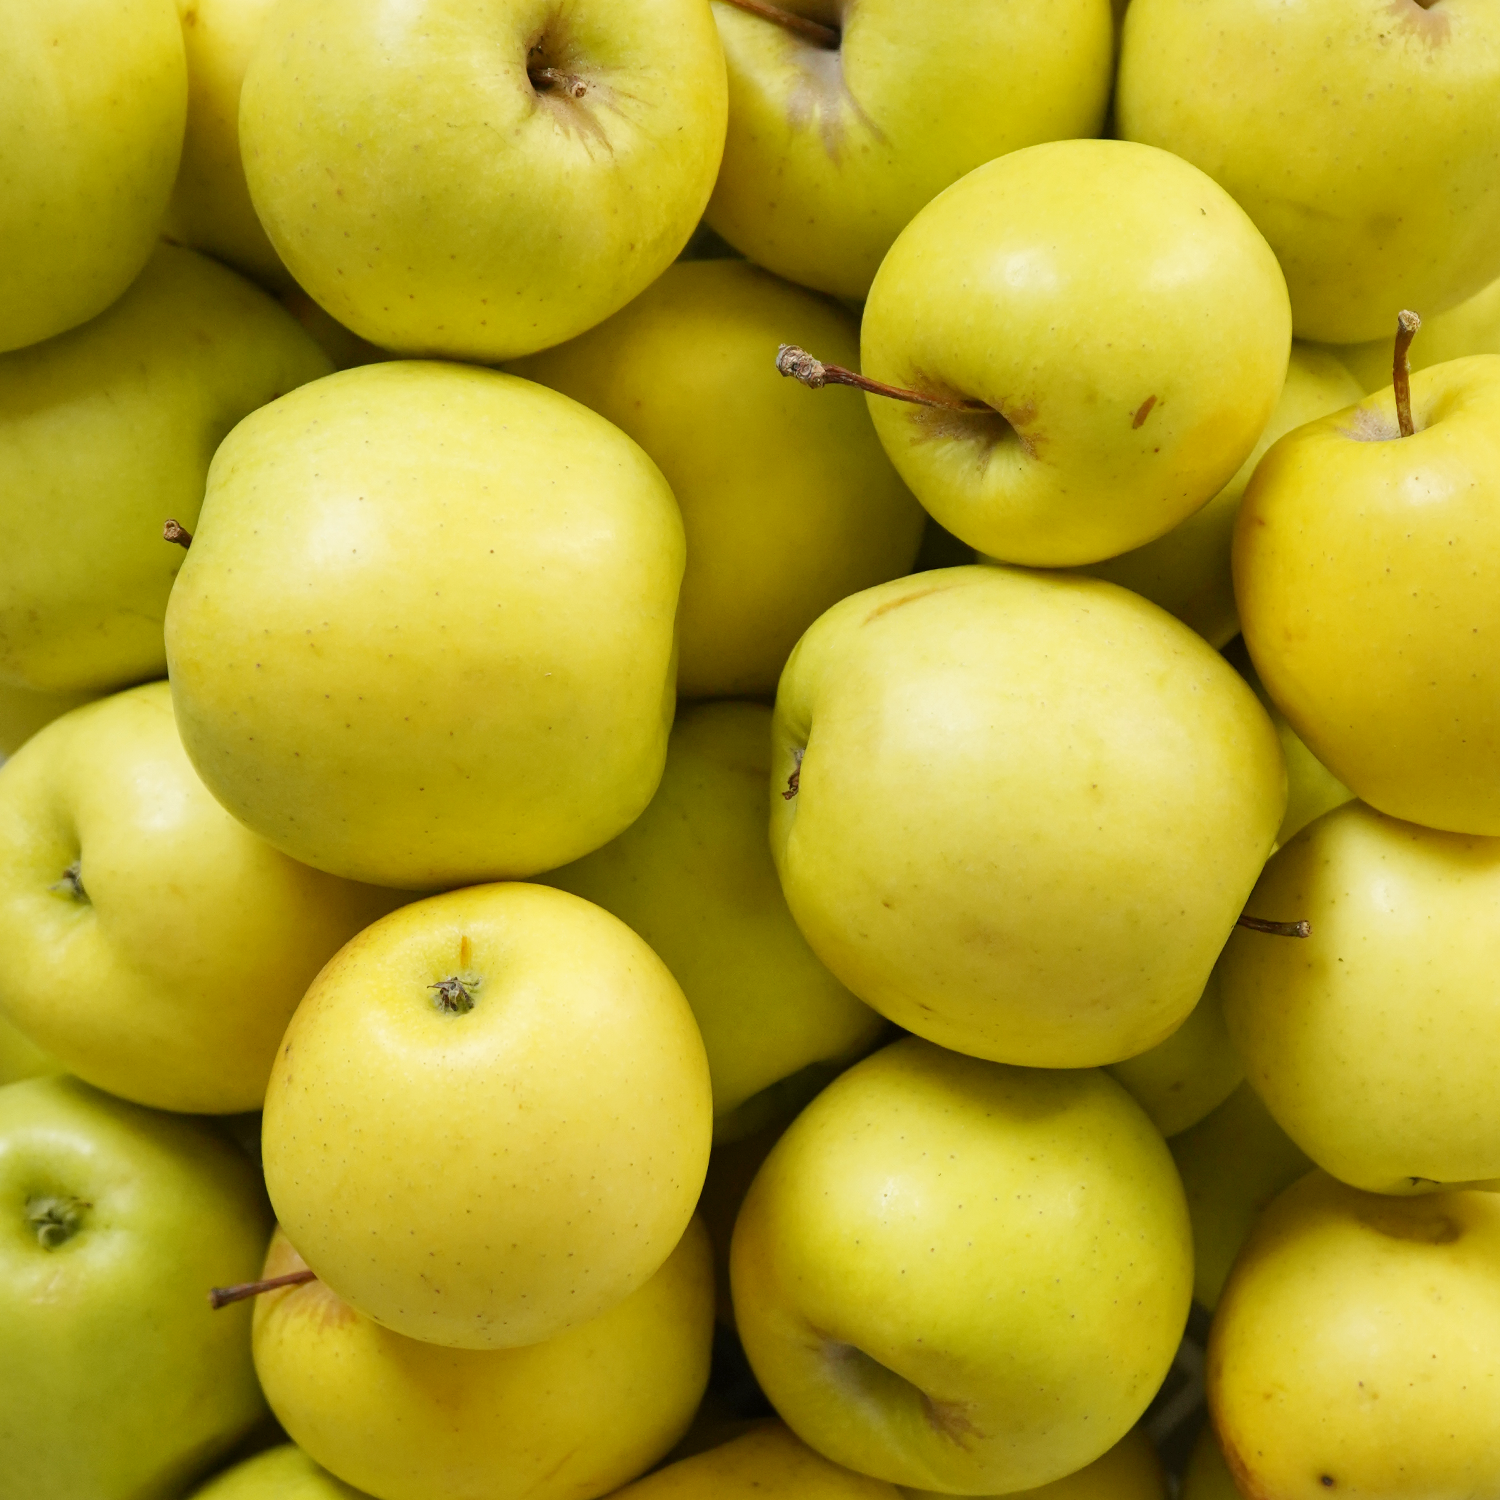 Manzanas golden ecológicas